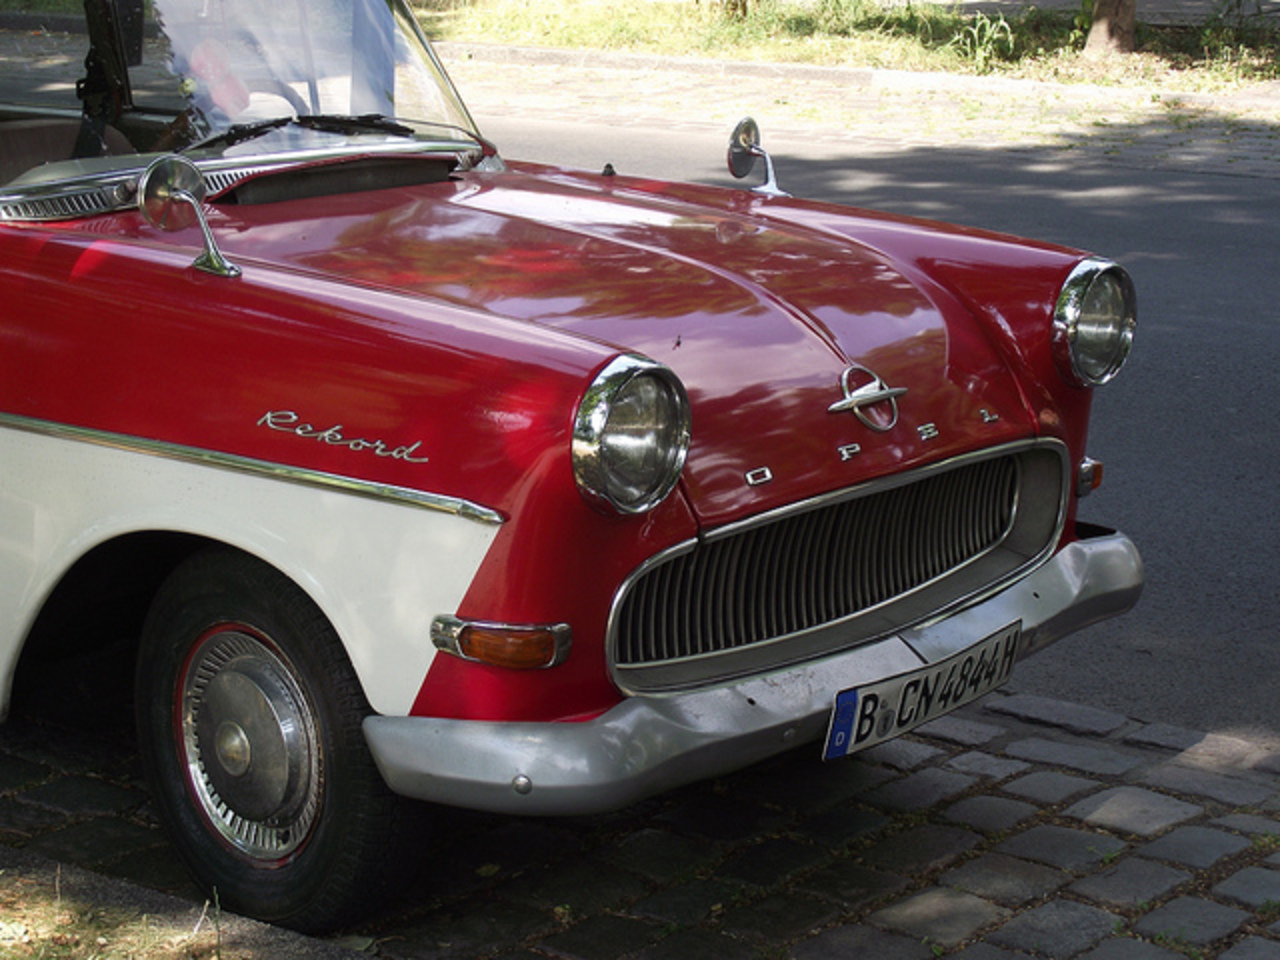 Opel Rekord P1 | Flickr - Photo Sharing!